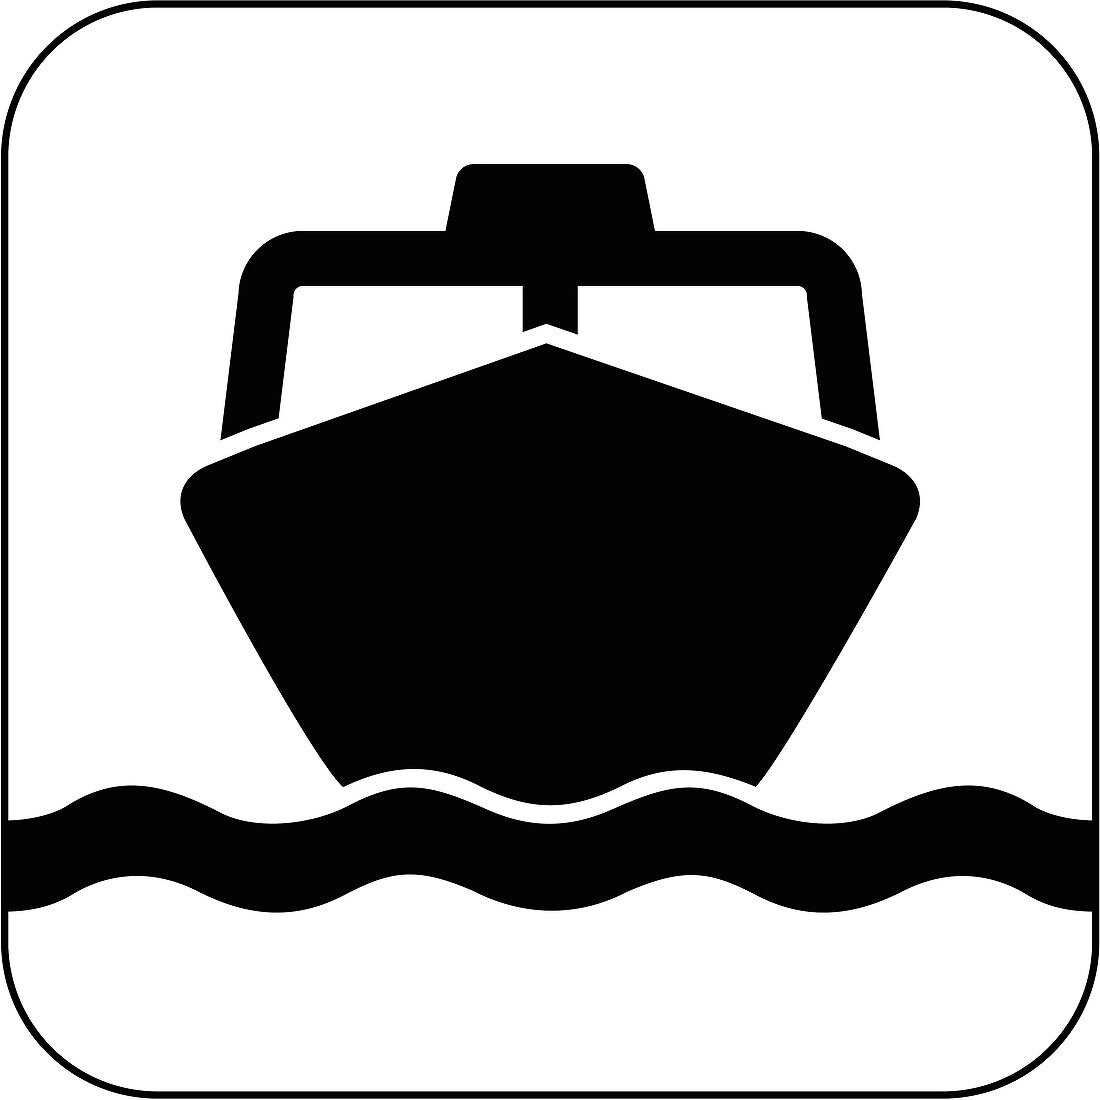 Ship symbol,artwork